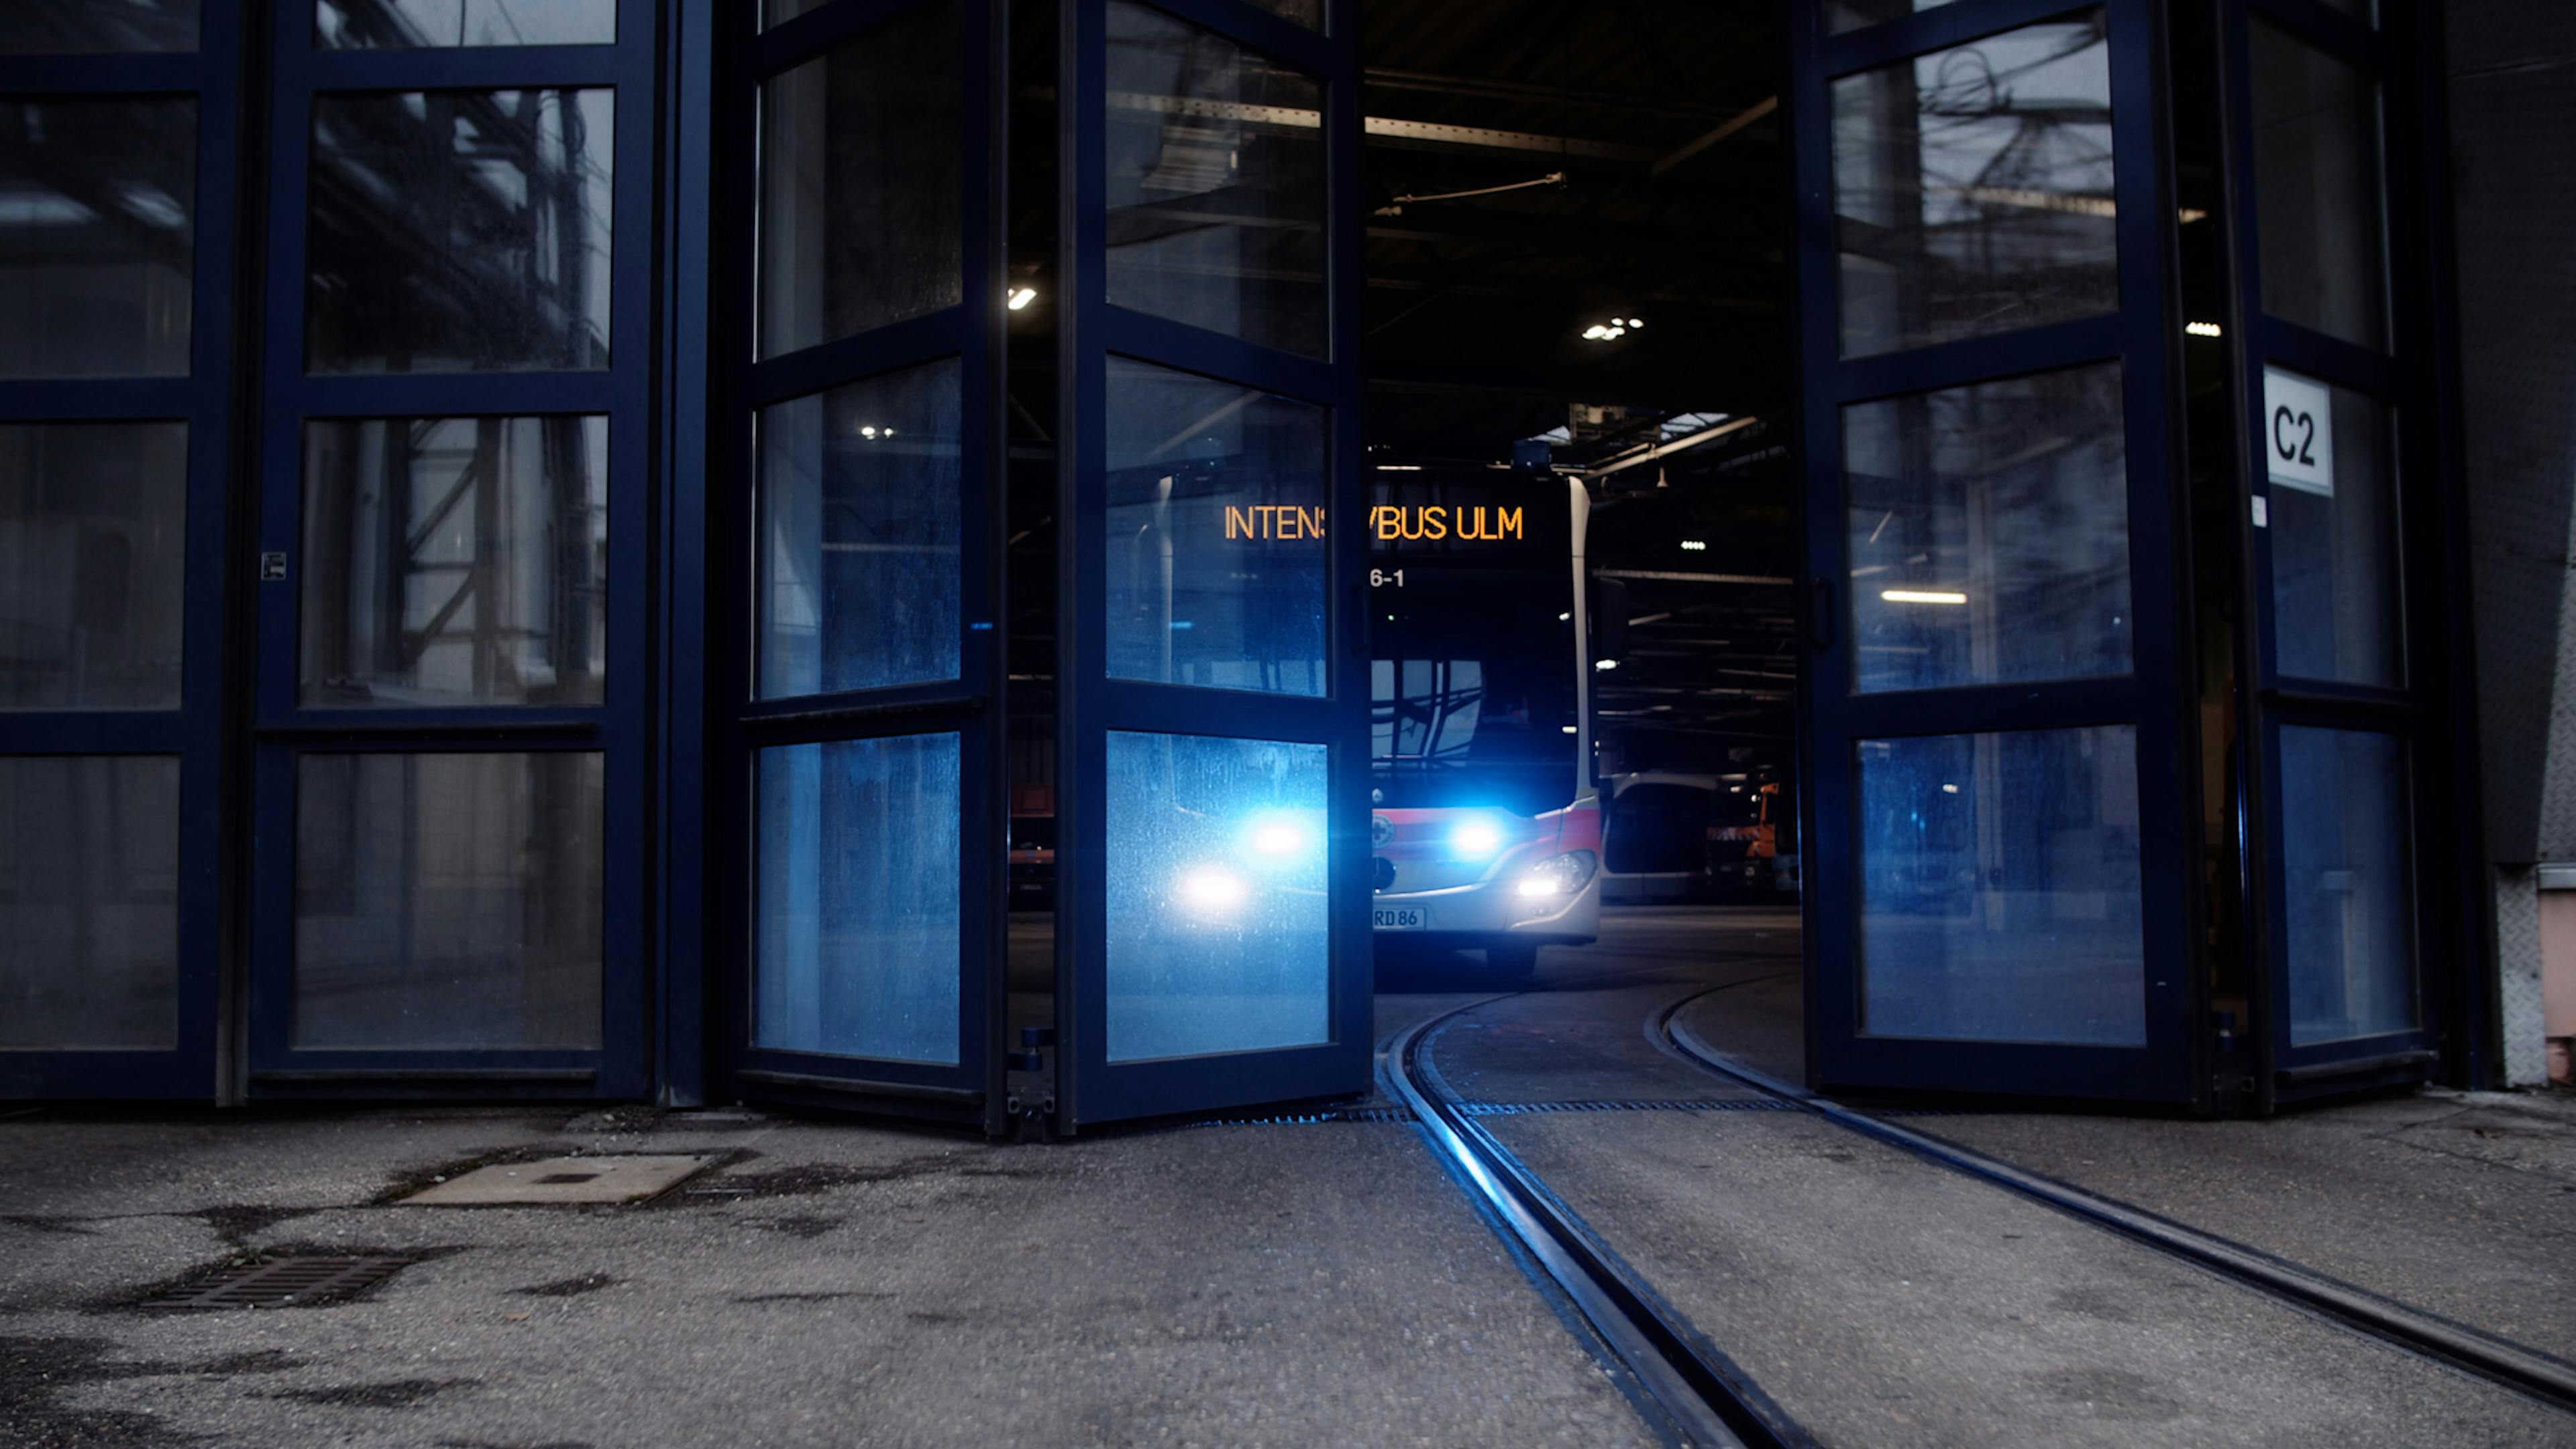 Ein teilweise durchsichtiges Tor öffnet sich, ein Linienbus mit Blaulicht und er Aufschrift "Intensivbus Ulm" fährt heraus